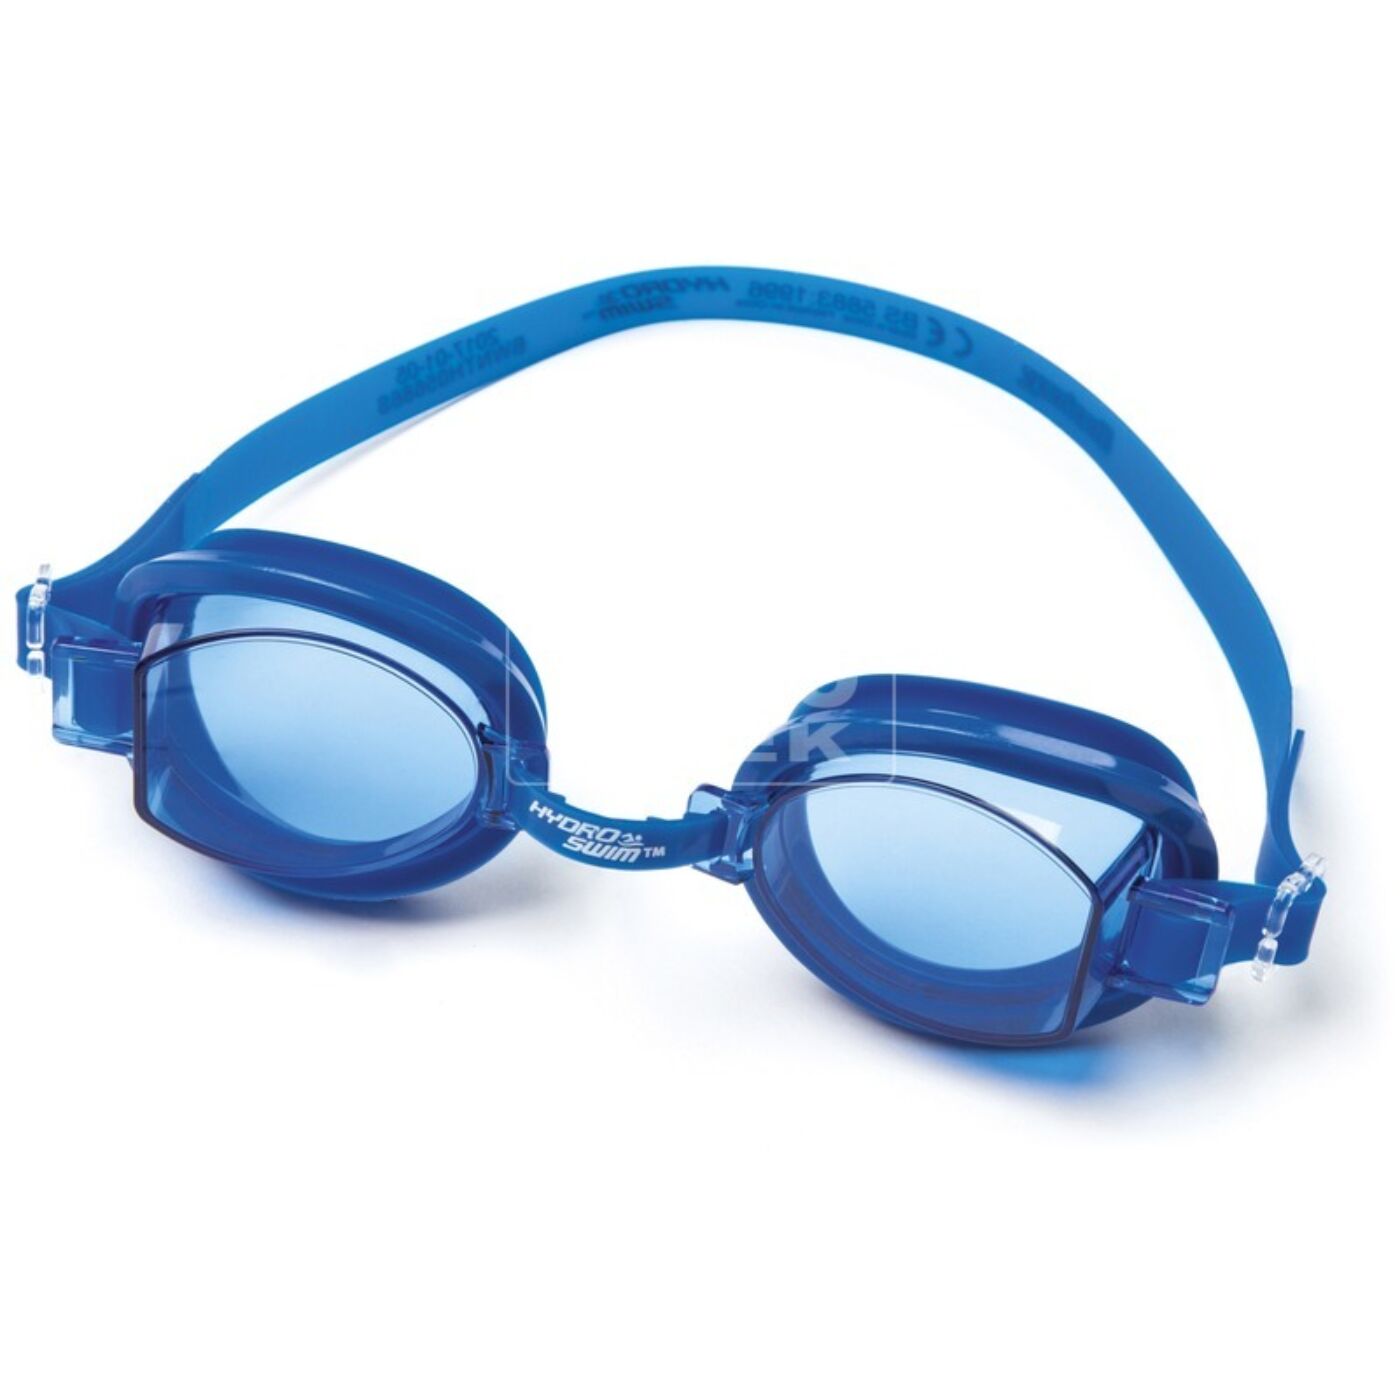 Ocean úszószemüveg